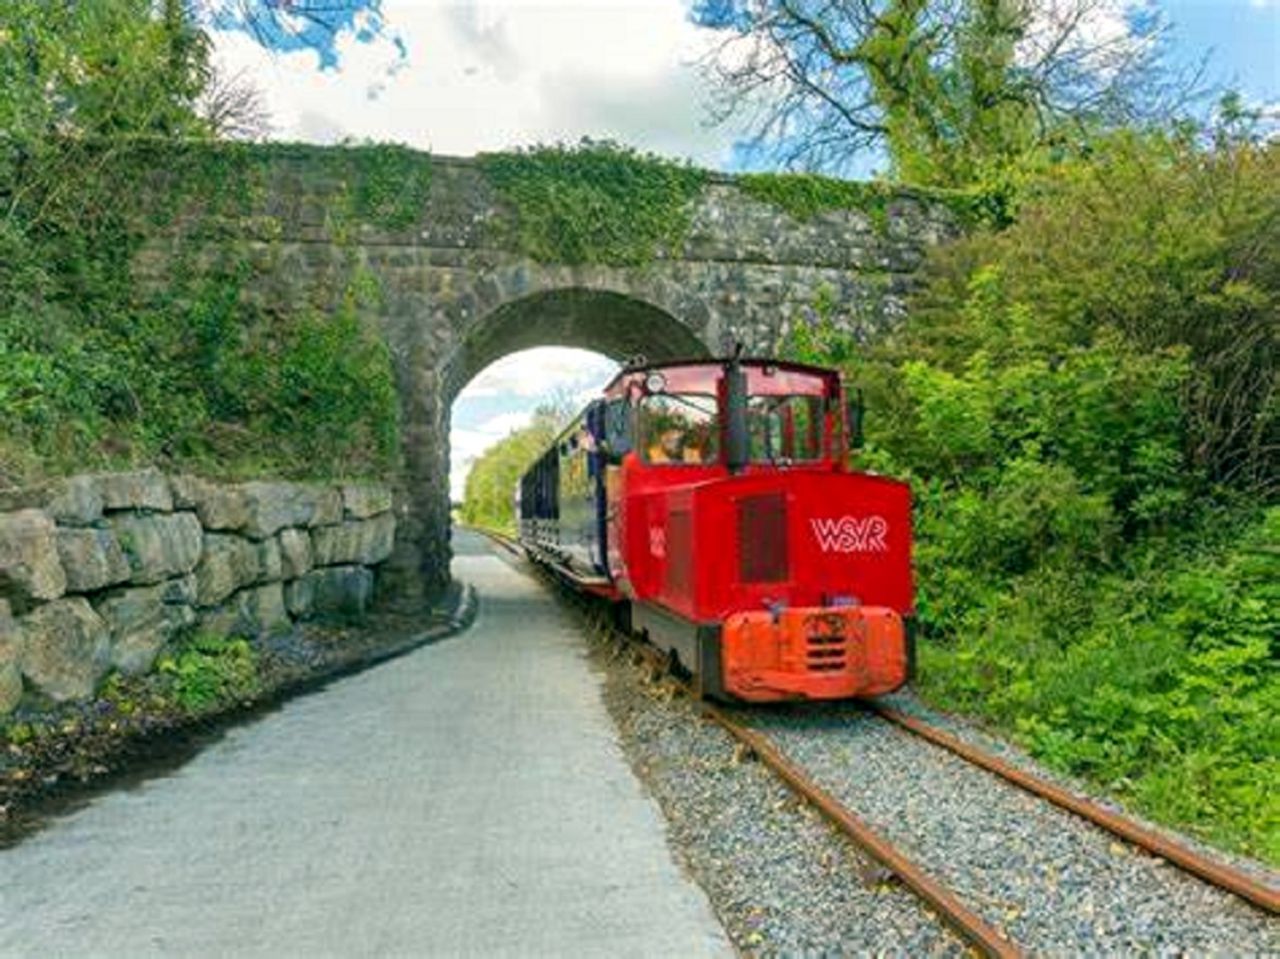 Waterford Suir Valley Railway